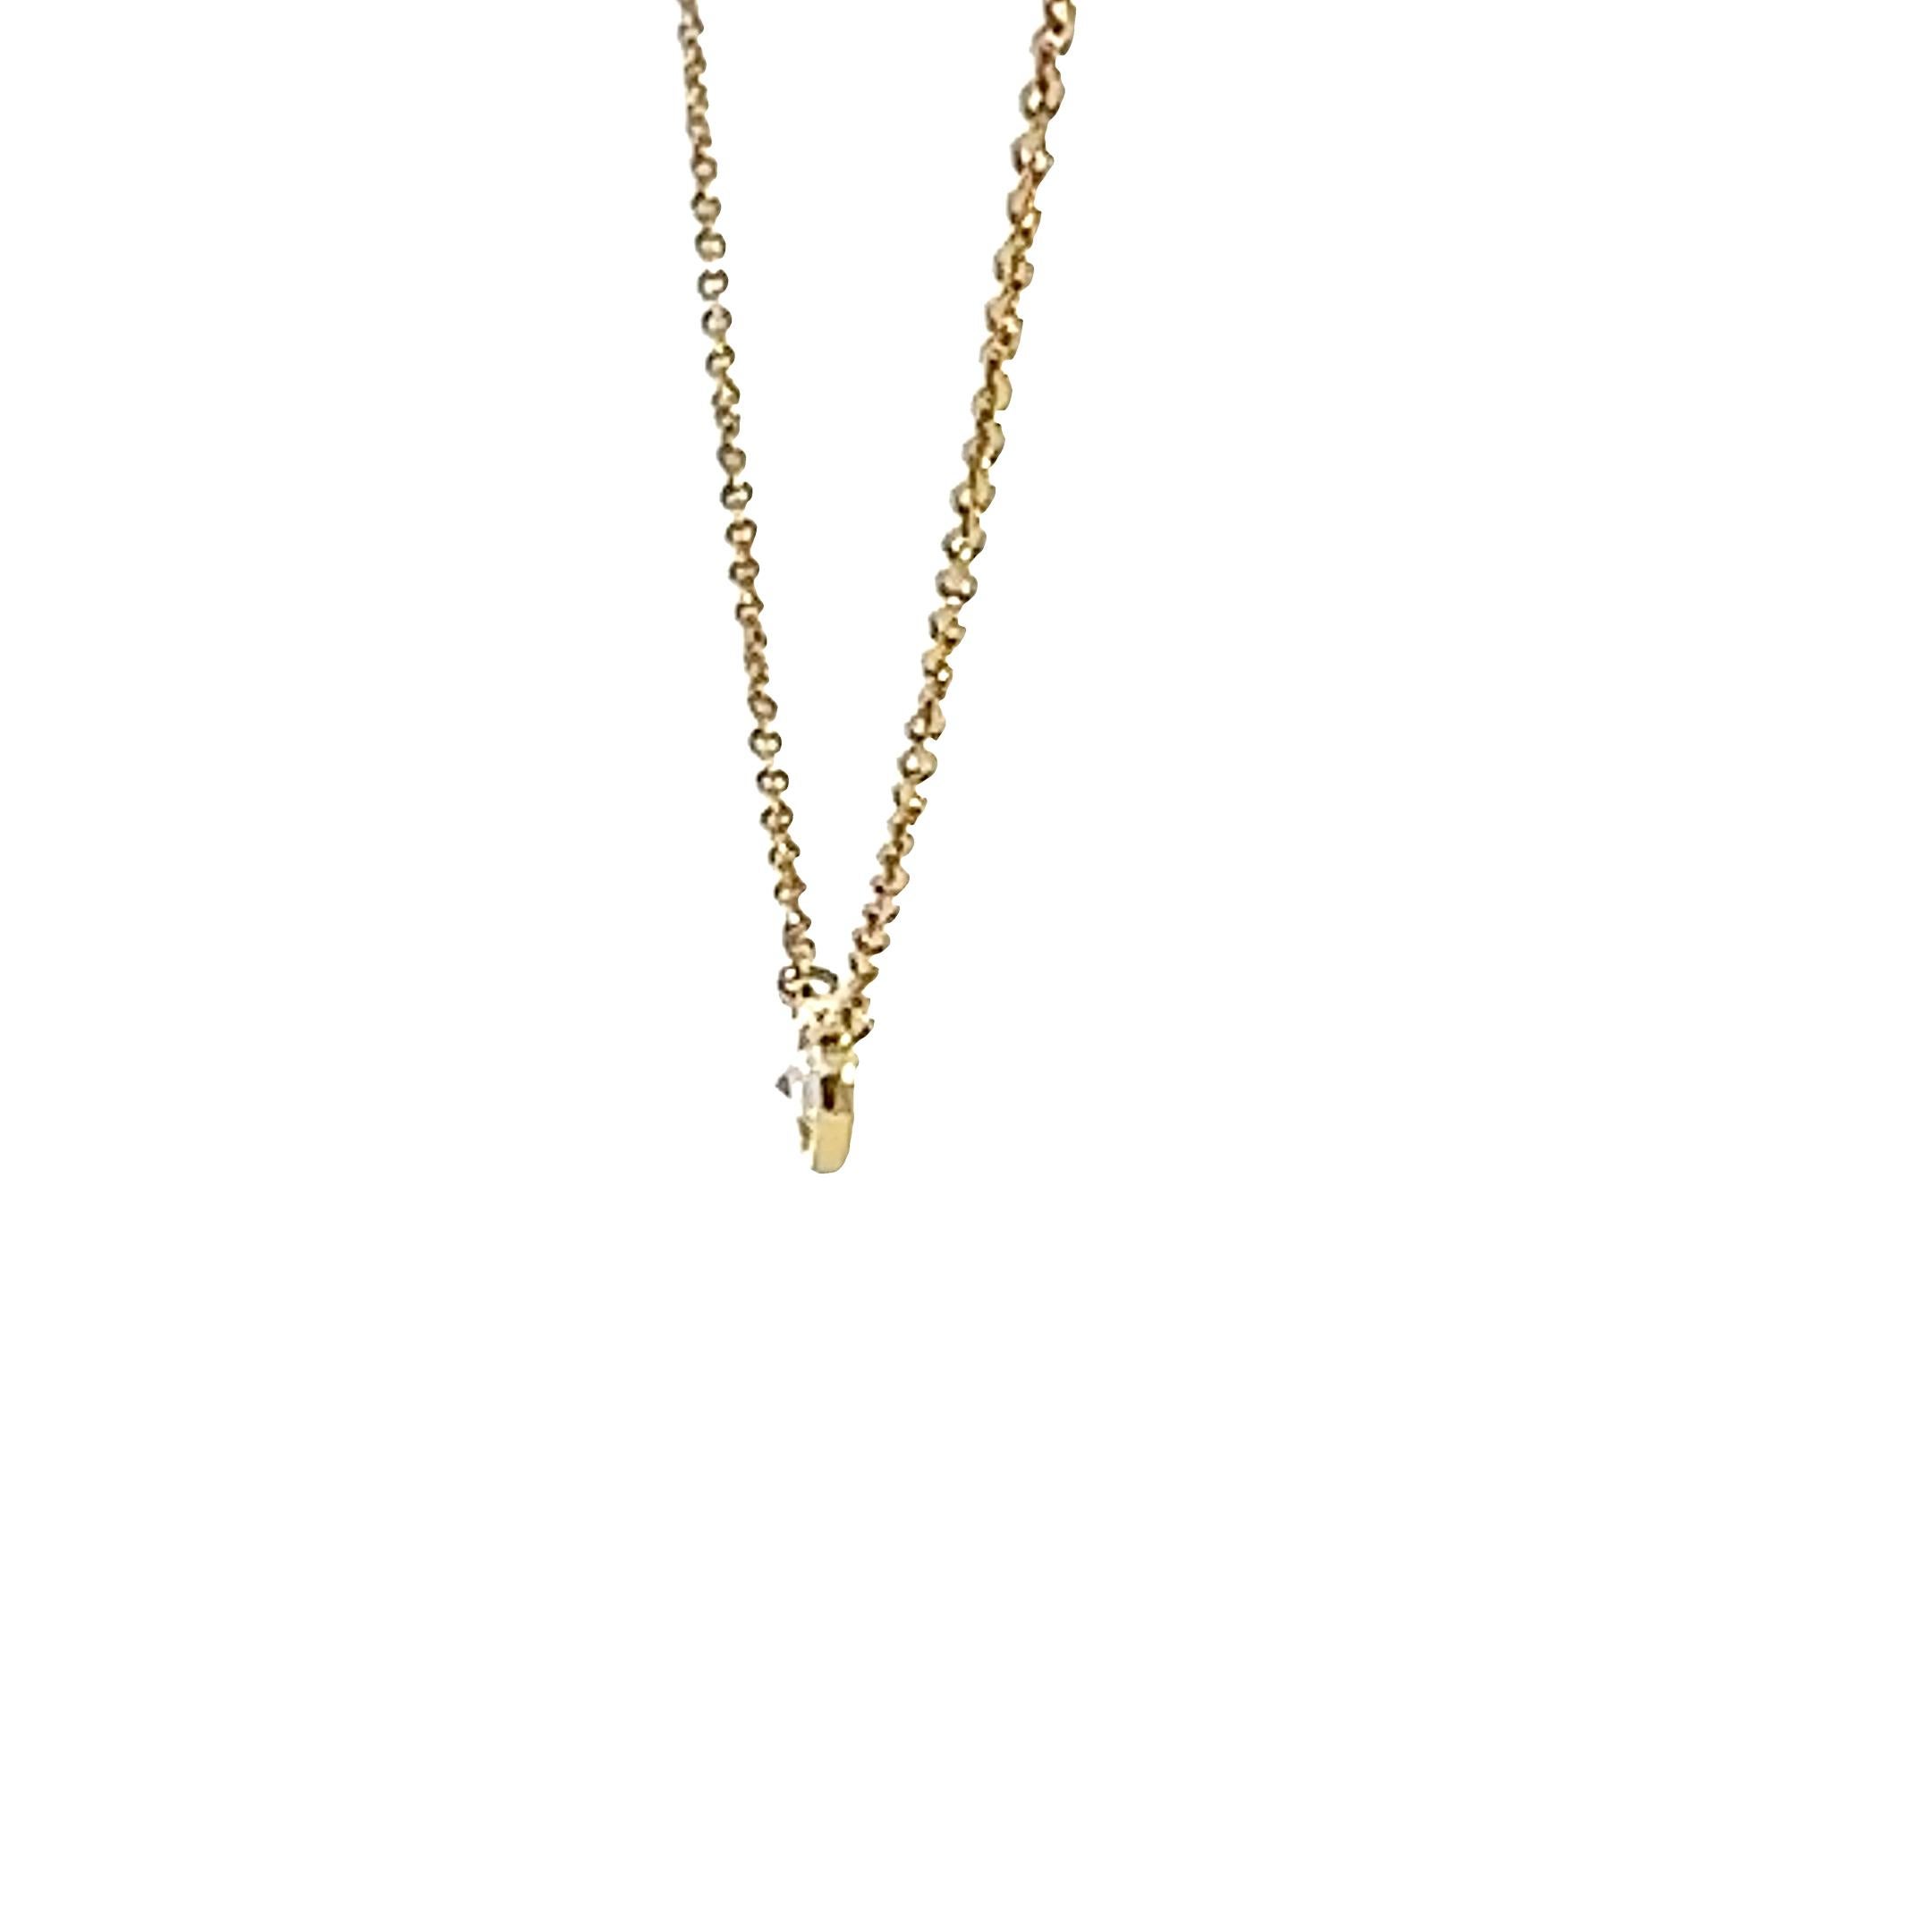 L'iconique pendentif à un seul diamant AleXS Diamonds by the Yard® de Tiffany & Co. offert par Alex & Co. Un seul diamant taille brillant serti sur lunette et poli à la main brille au centre de ce pendentif délicat et raffiné en or jaune 18 carats.